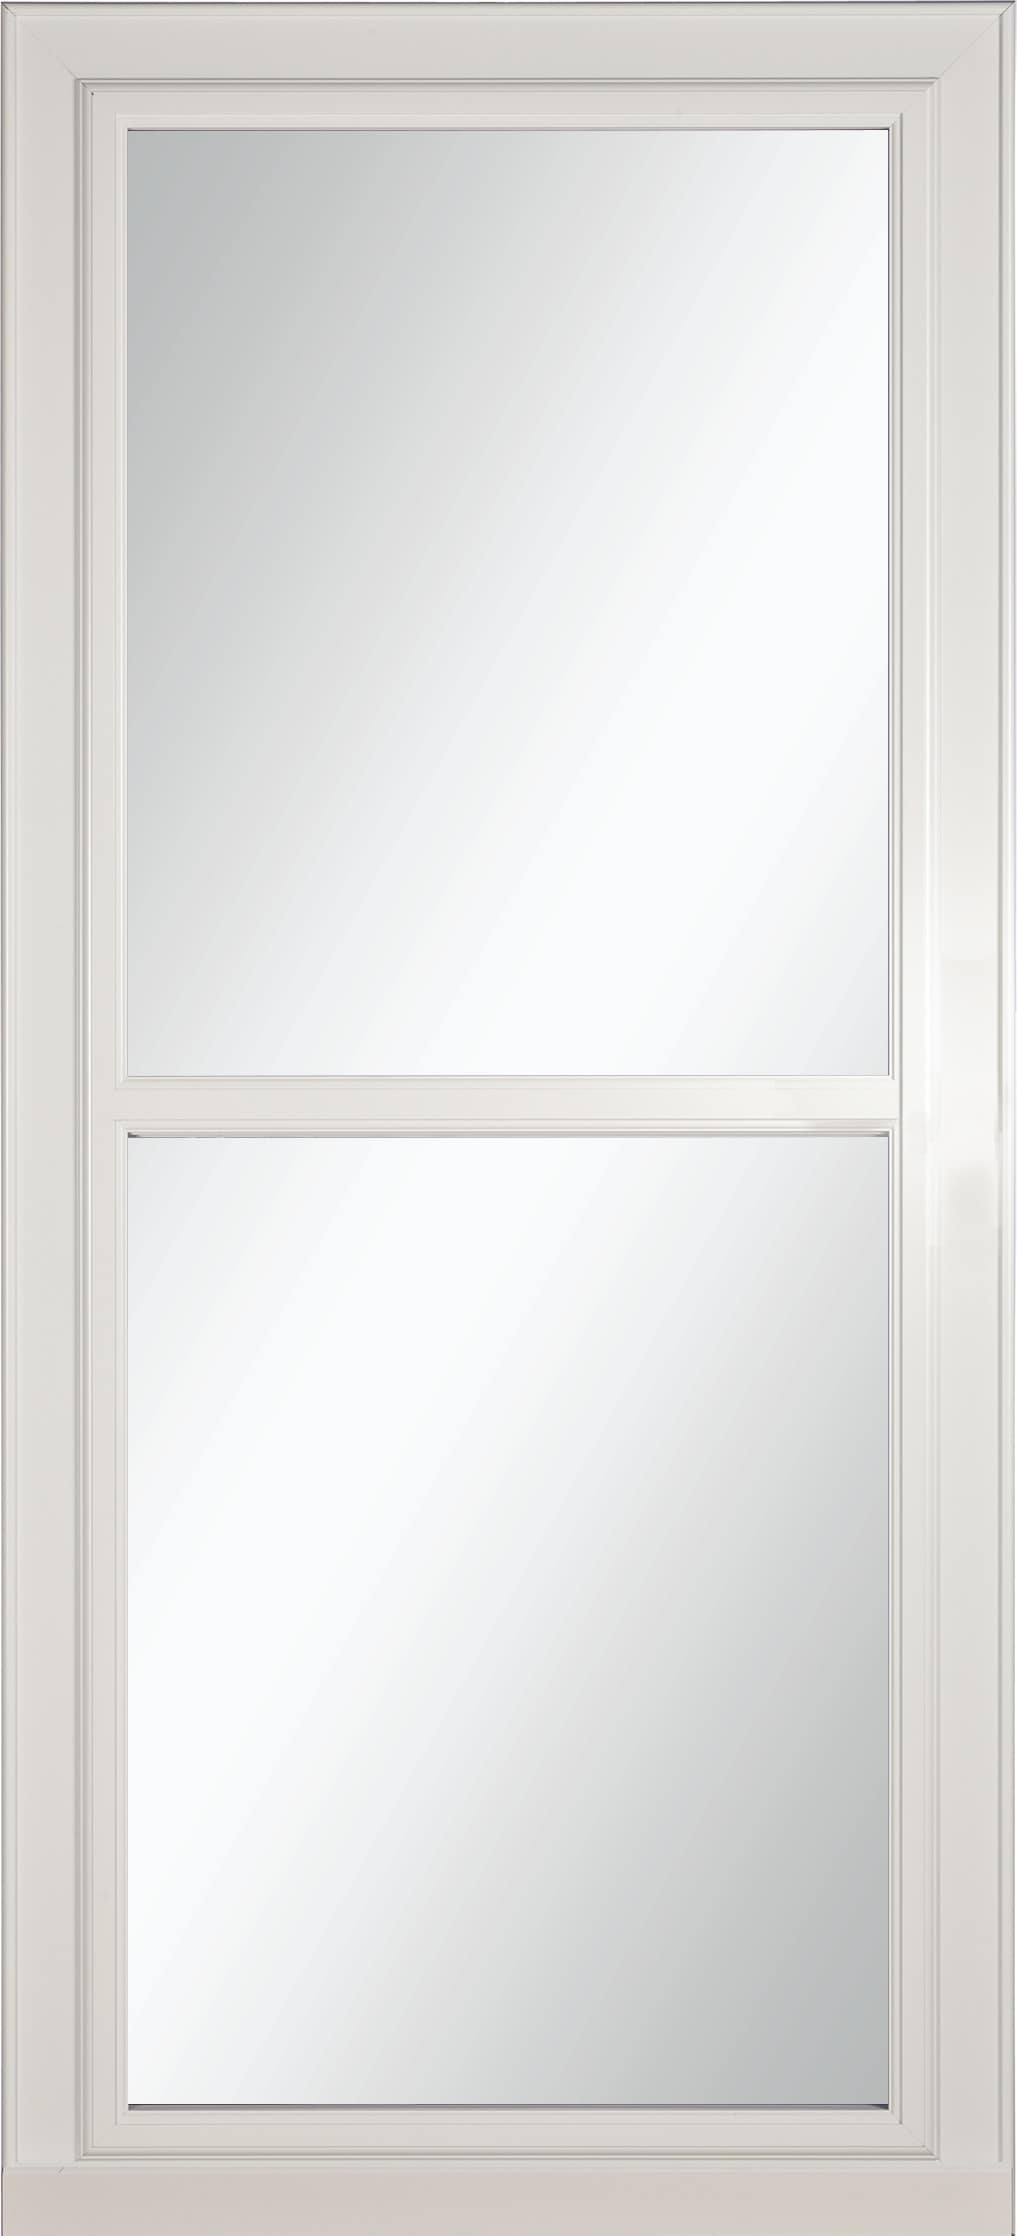 Tradewinds Selection 32-in x 81-in White Full-view Retractable Screen Aluminum Storm Door | - LARSON 14604031